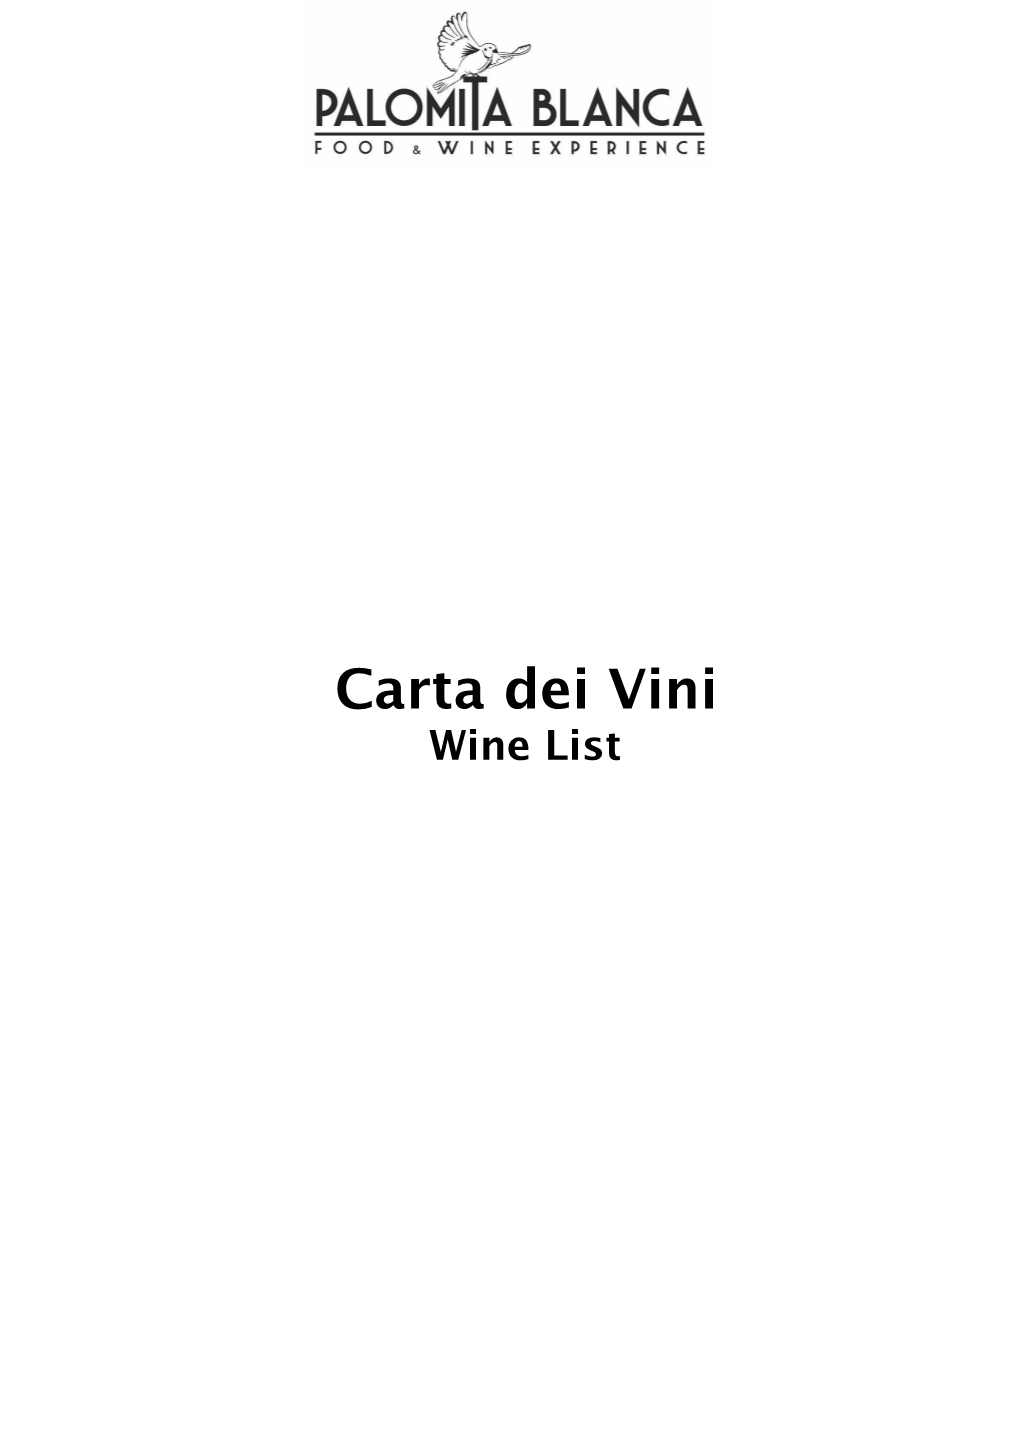 Carta Dei Vini Wine List Vini Dei Colli Di Luni Al Calice/Colli Di Luni Wines by the Glass